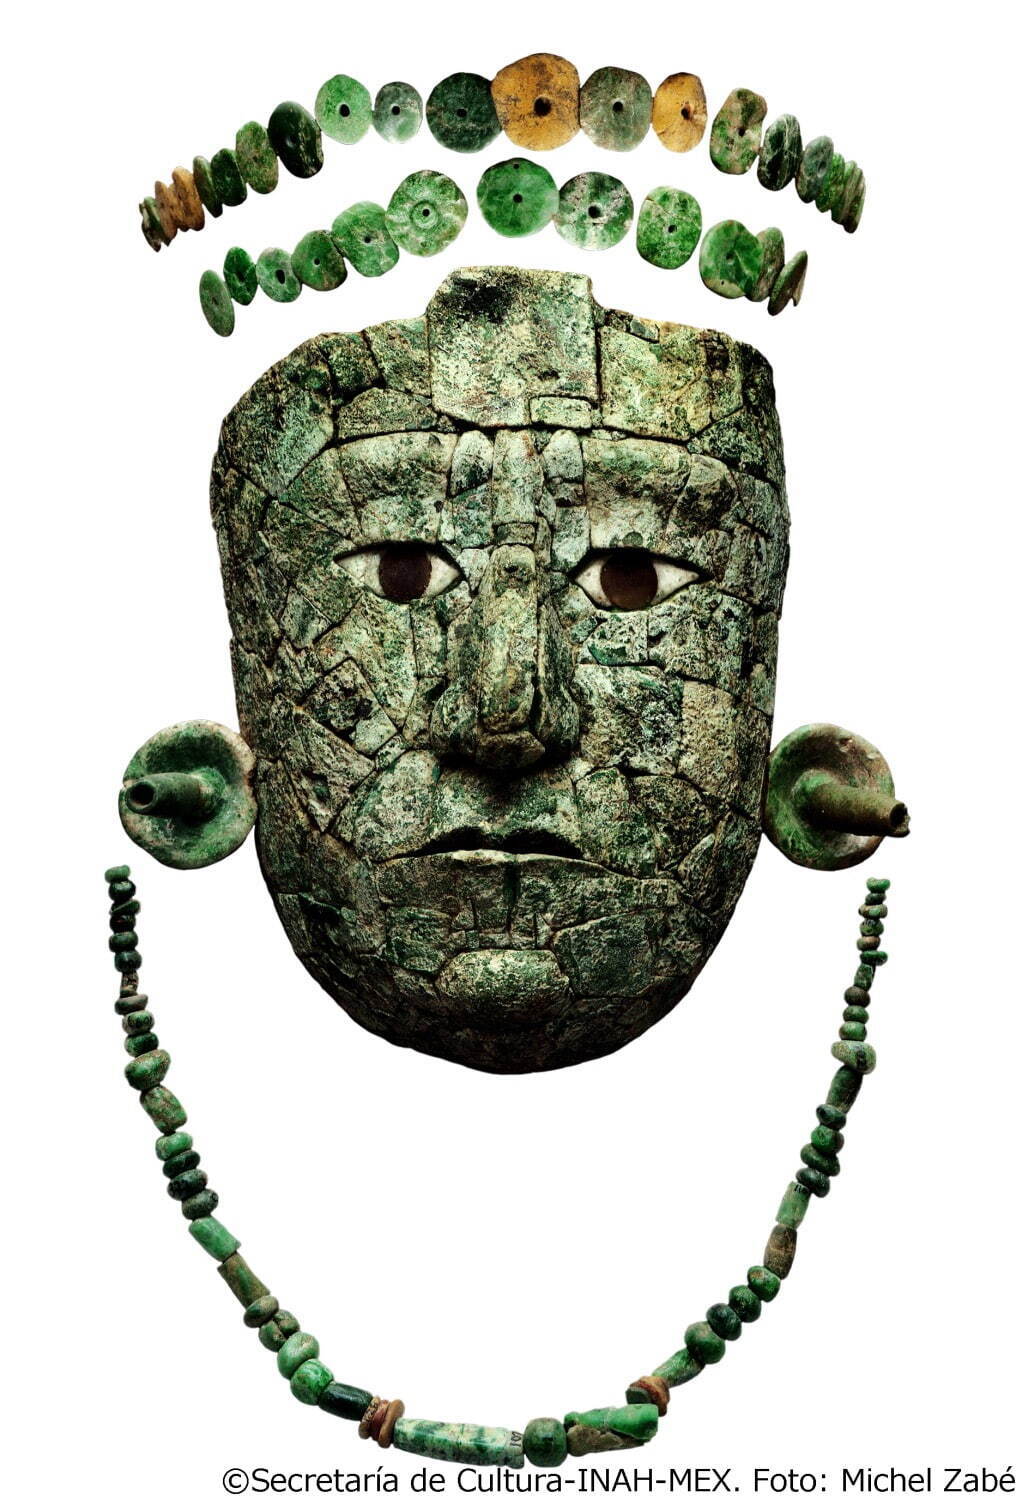 赤の女王のマスク・冠・首飾り
マヤ文明 7世紀後半 パレンケ、13号神殿出土
アルベルト・ルス・ルイリエ パレンケ遺跡博物館蔵